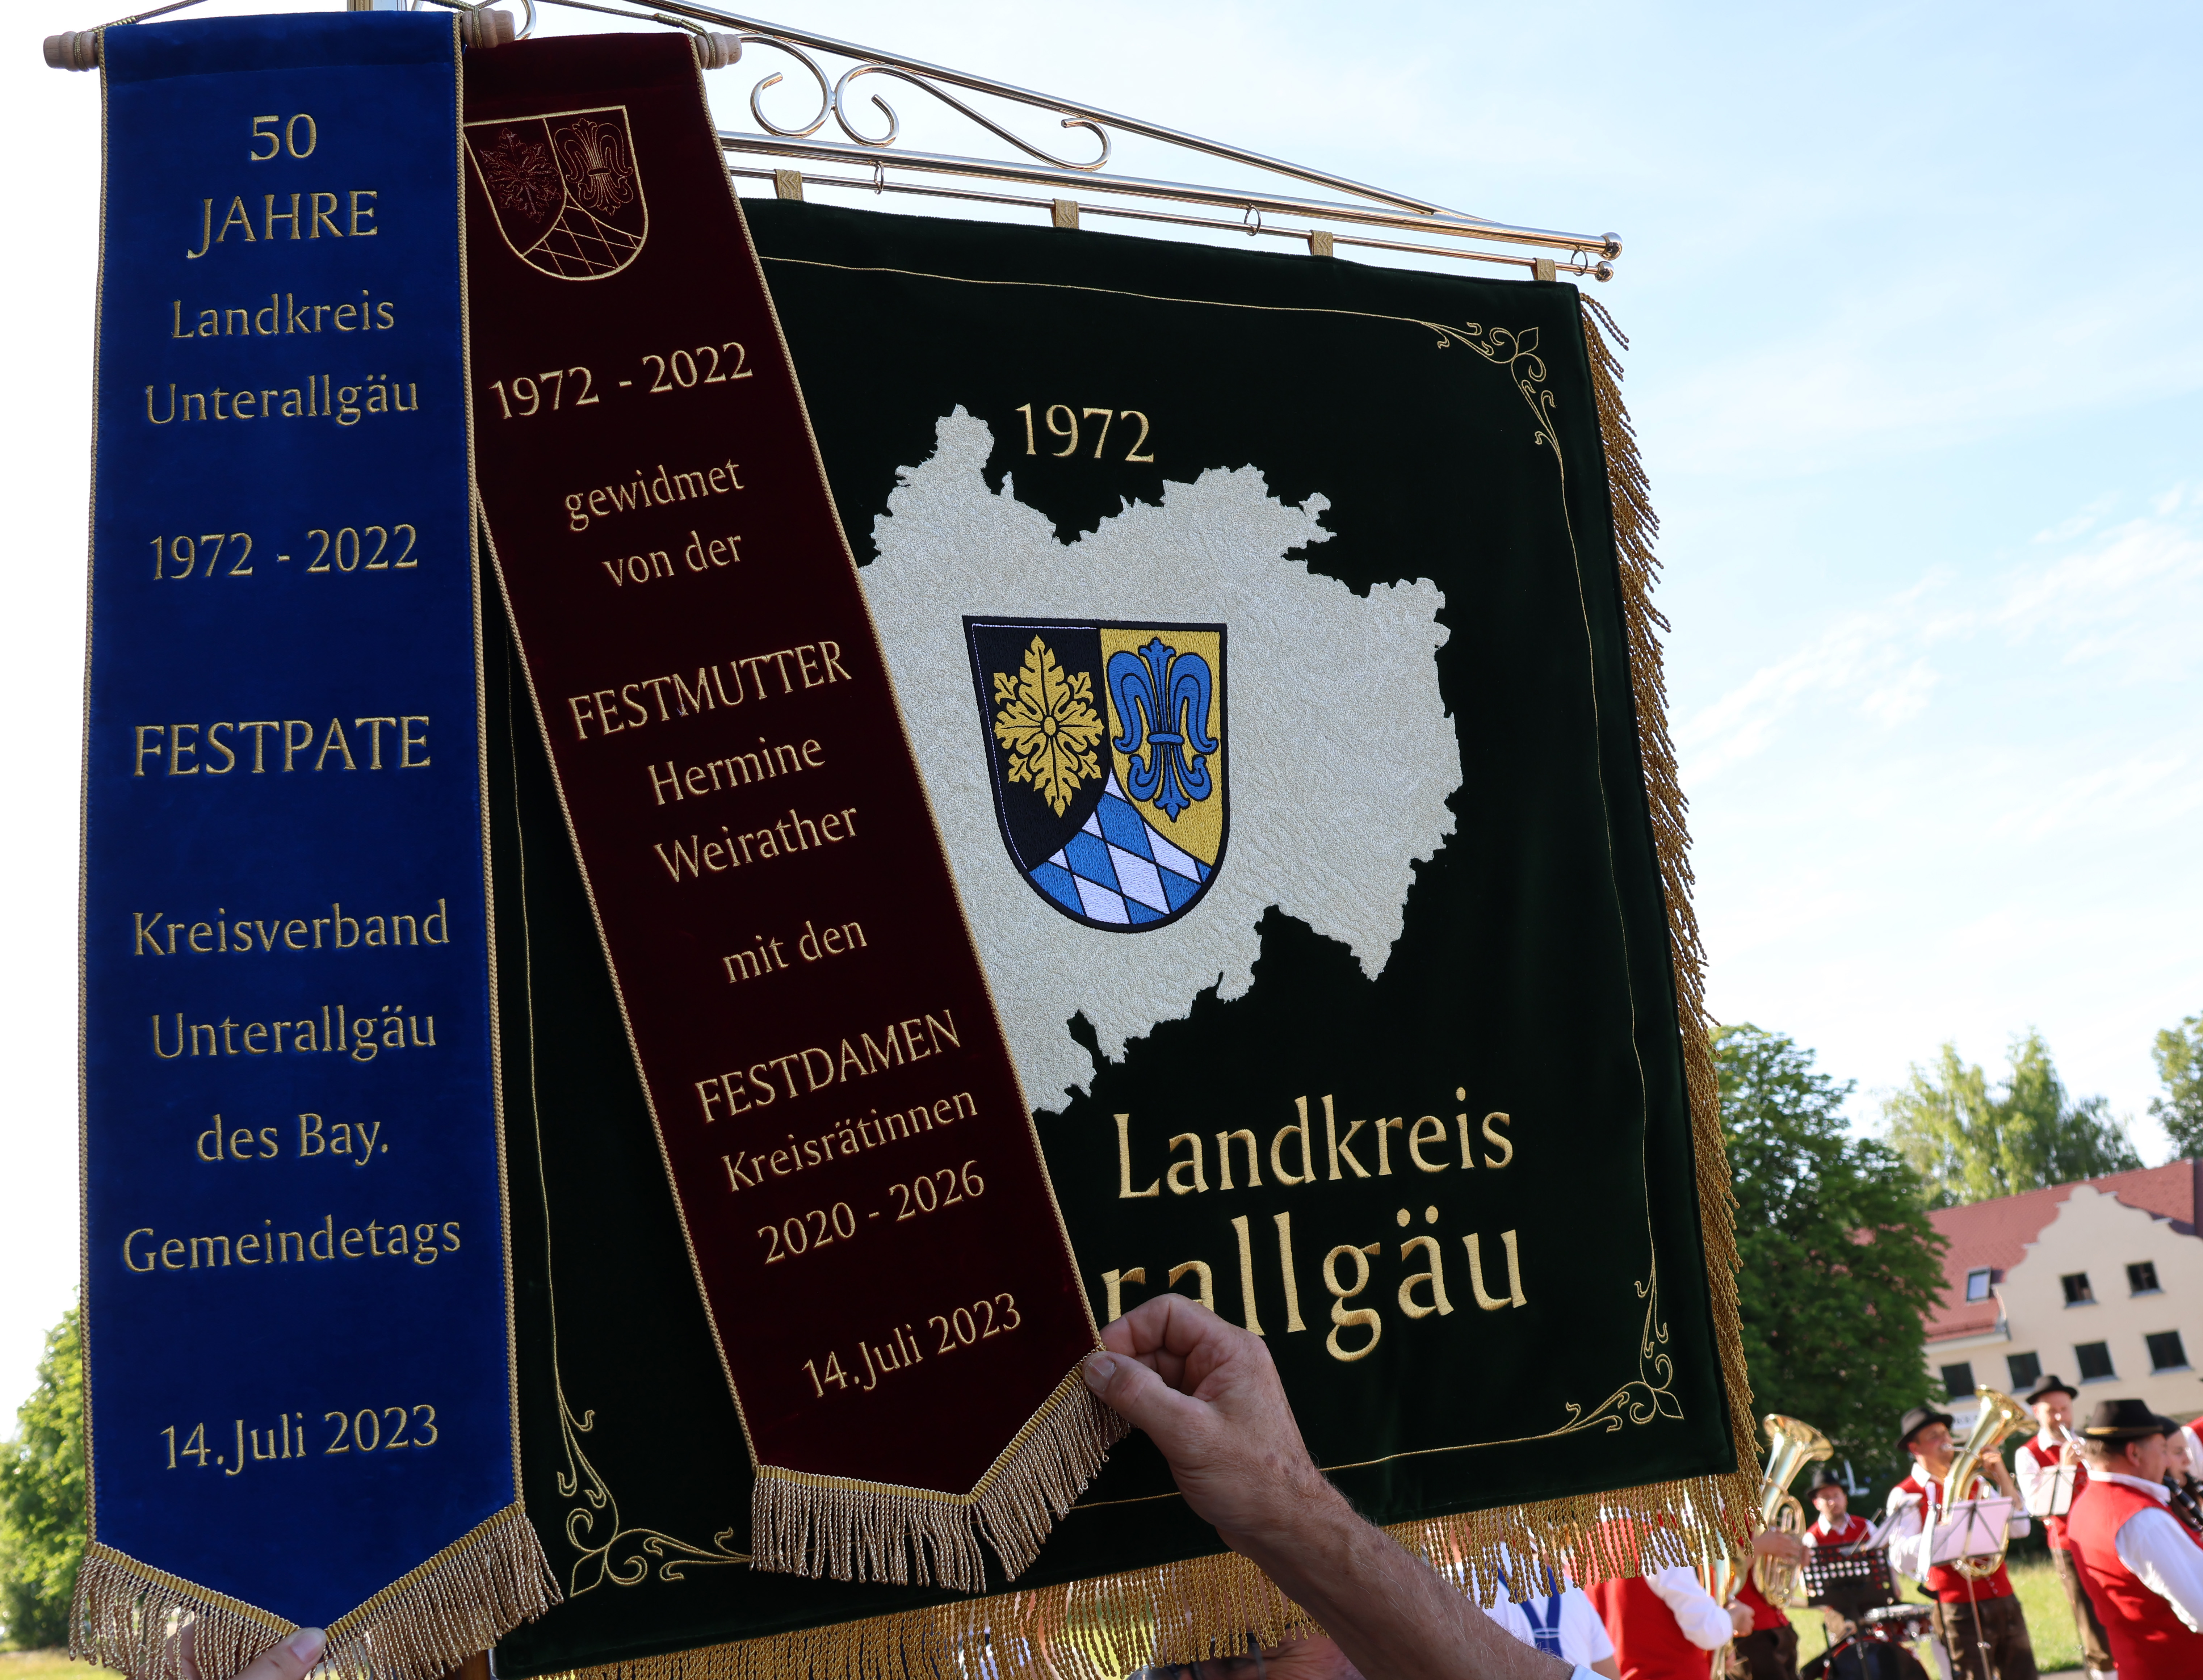 Auf dieser Seite der Landkreis-Standarte ist eine Karte des Landkreises Unterallgäu zu sehen sowie das Wappen und das Gründungsjahr des Landkreises, 1972.  